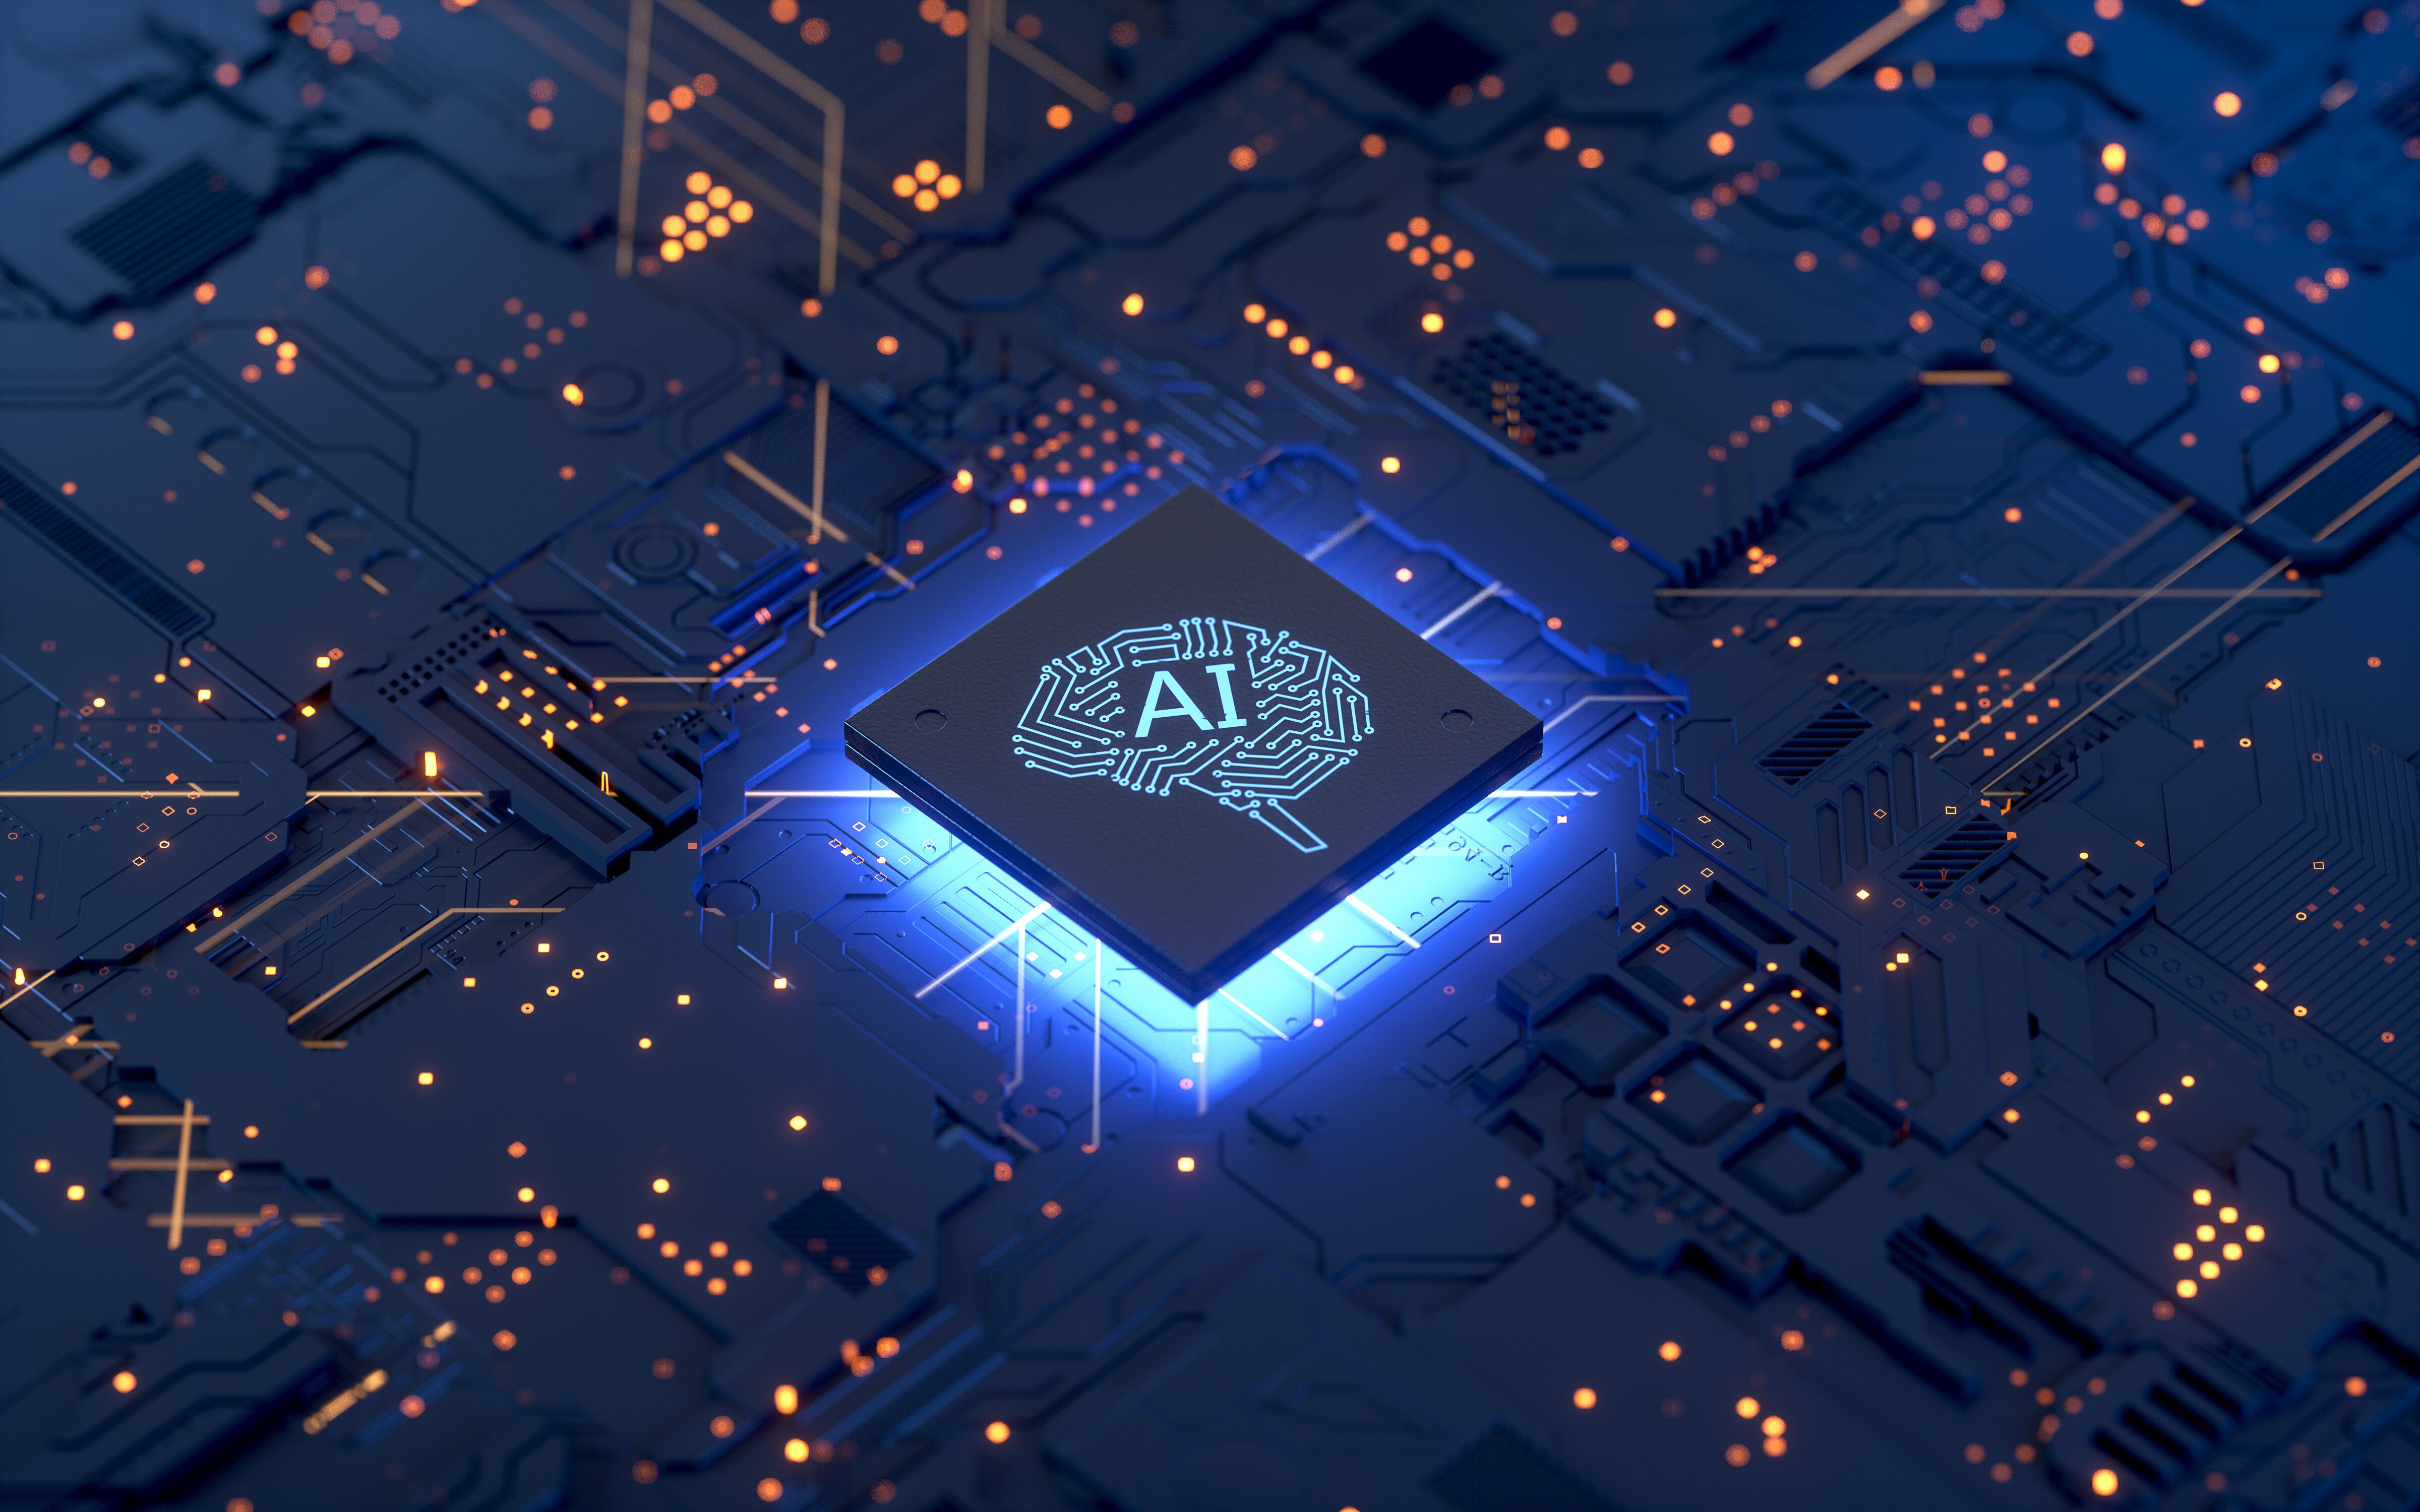 Kryptobørs begrænser brug af AI – gav negative oplevelser og unøjagtige oplysninger